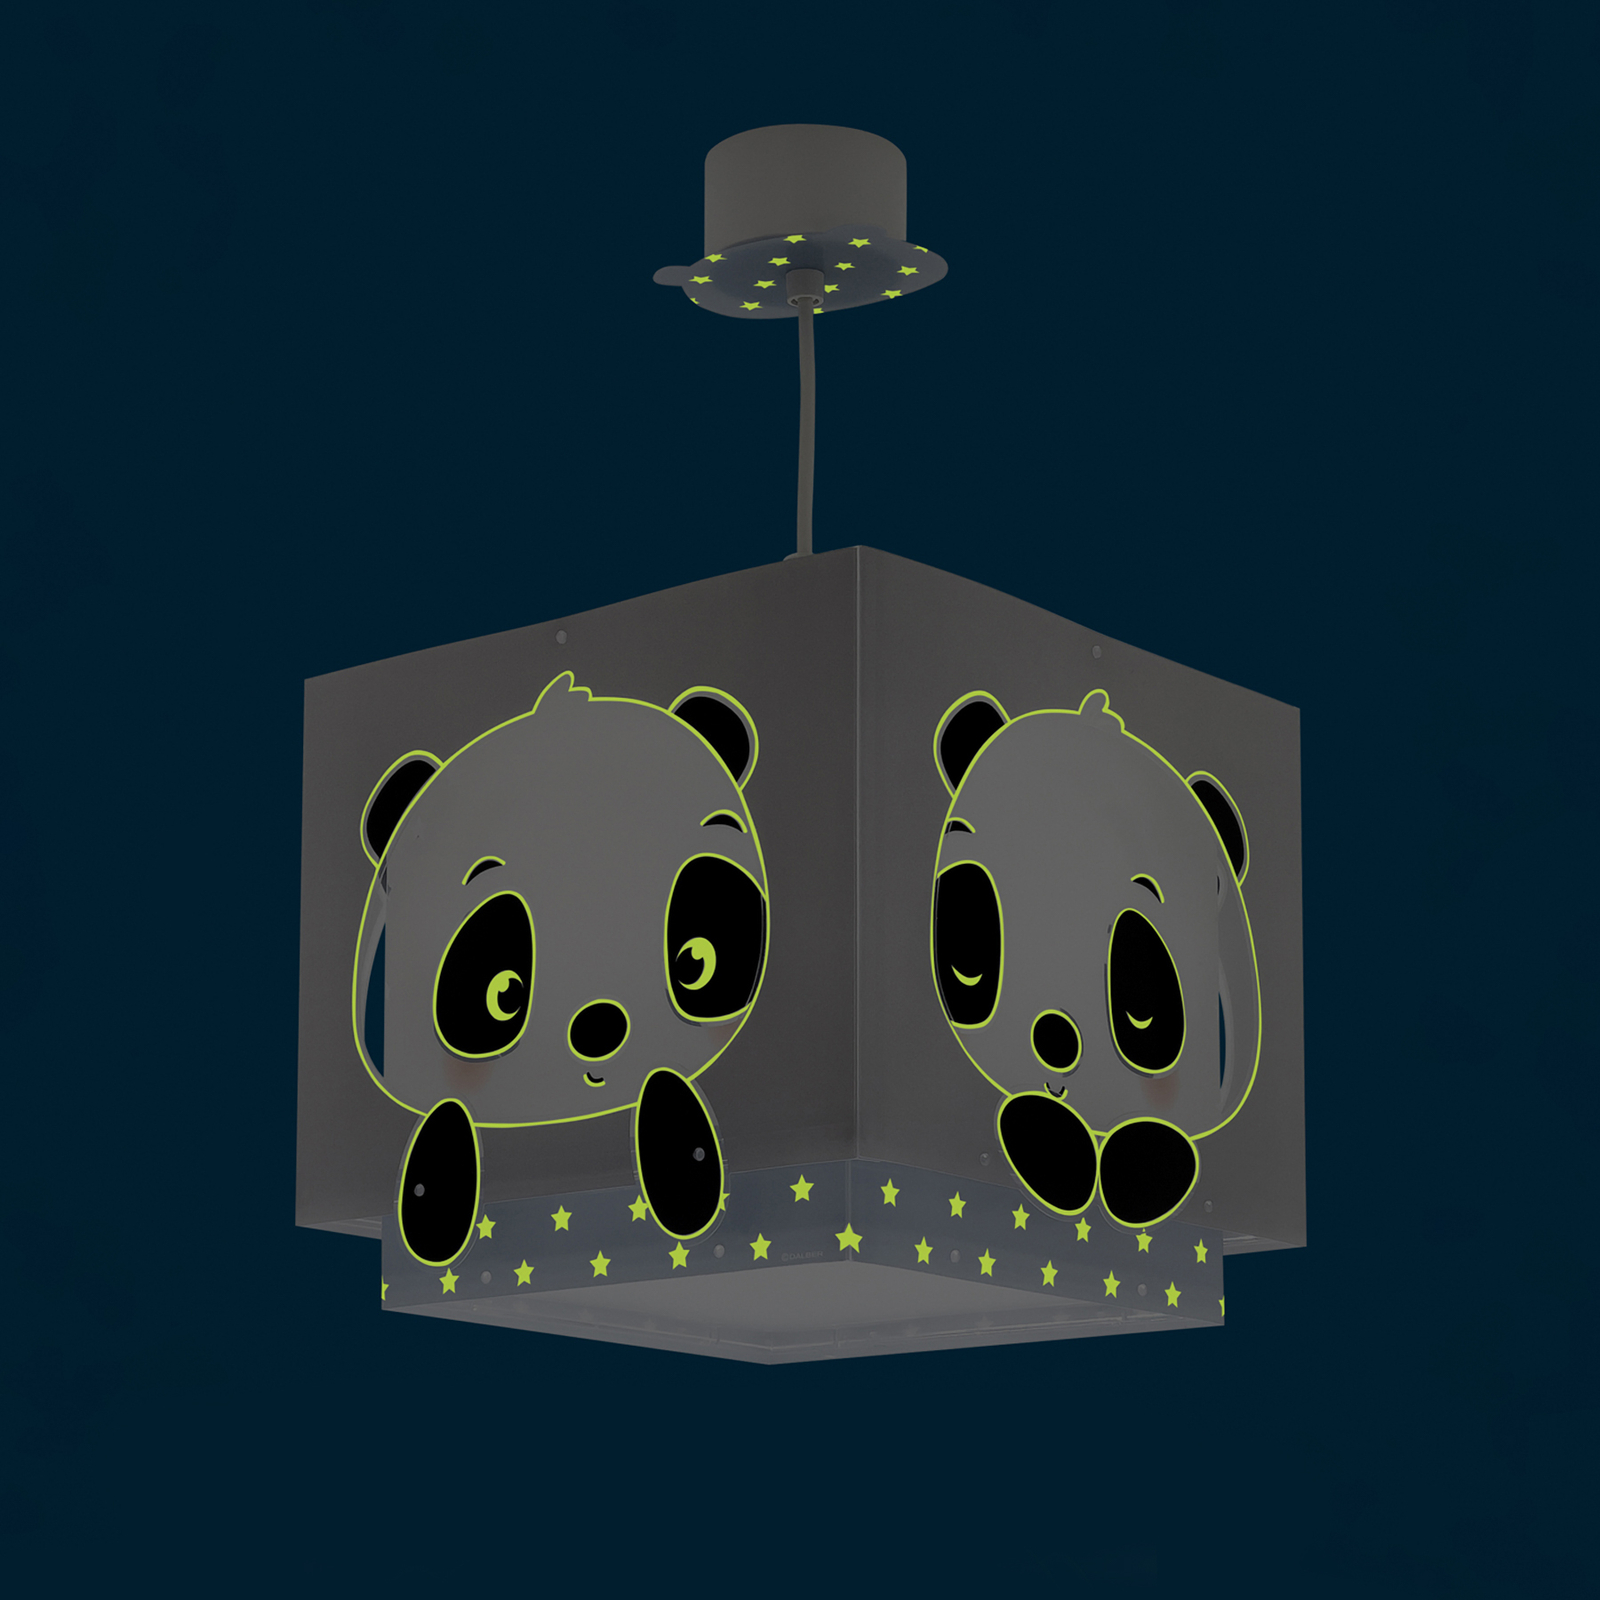 Dalber Panda lampă suspendată cameră copil albastr